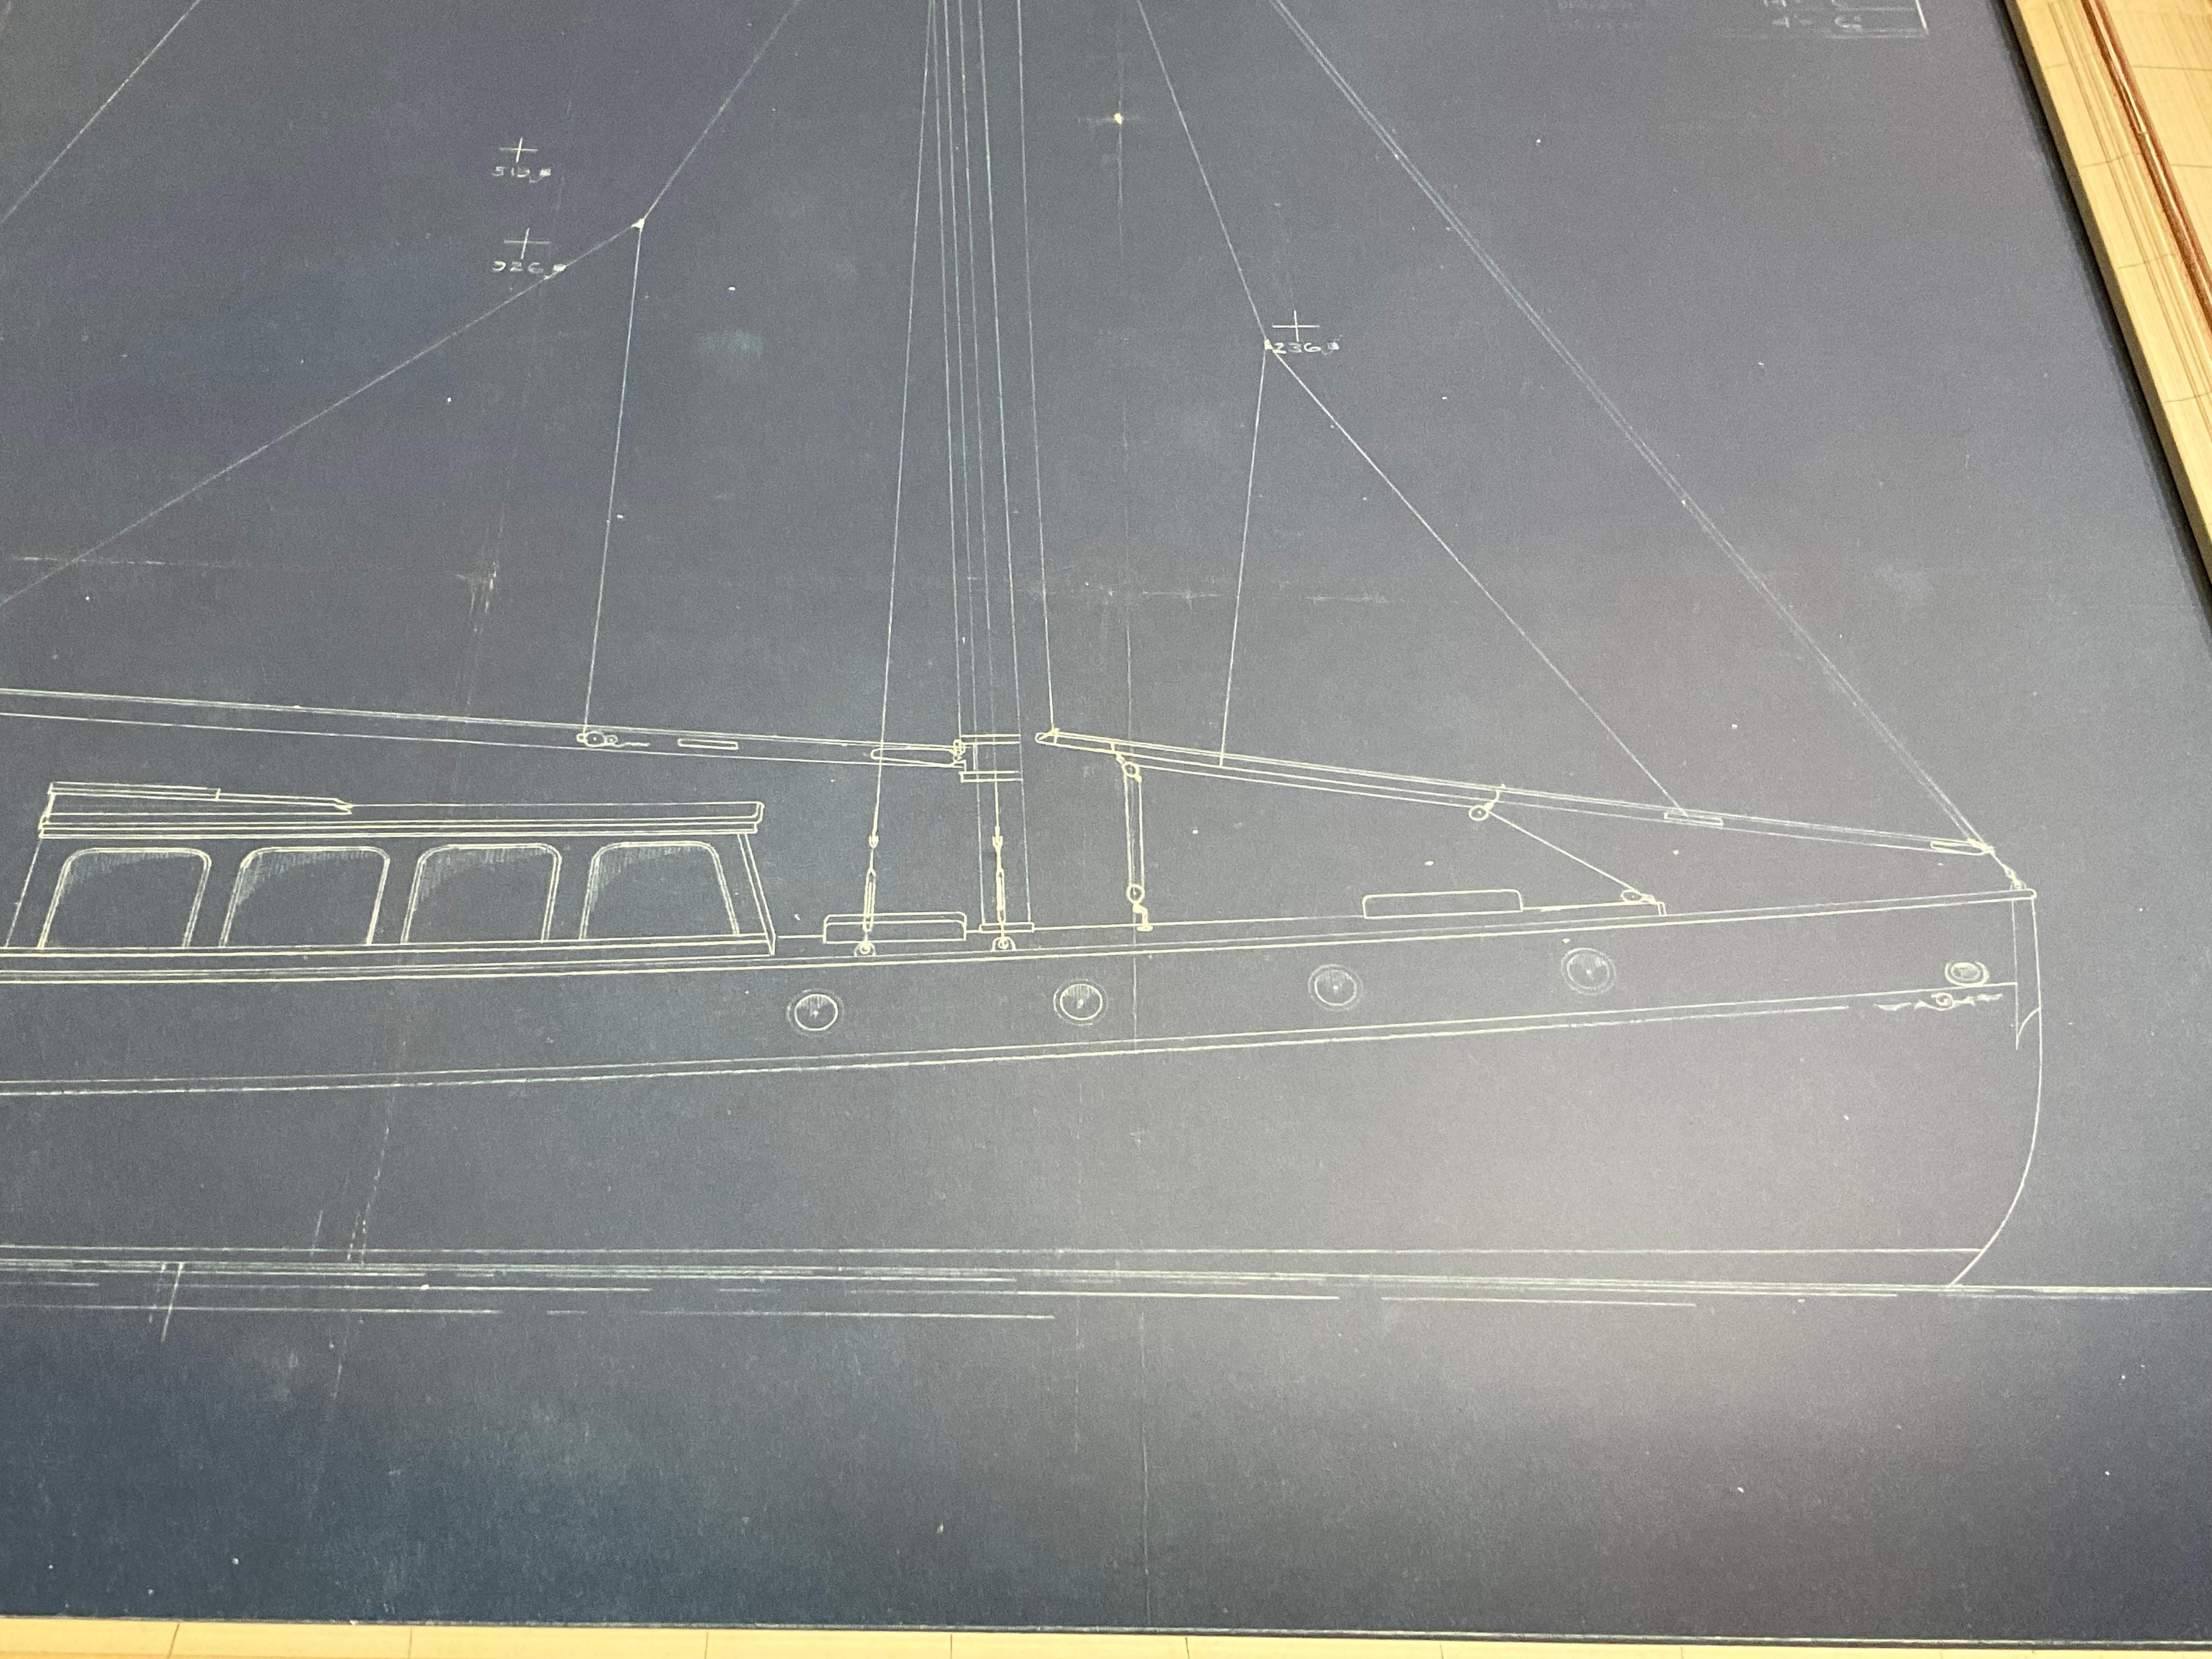 Paper Yacht Blueprint From John Alden